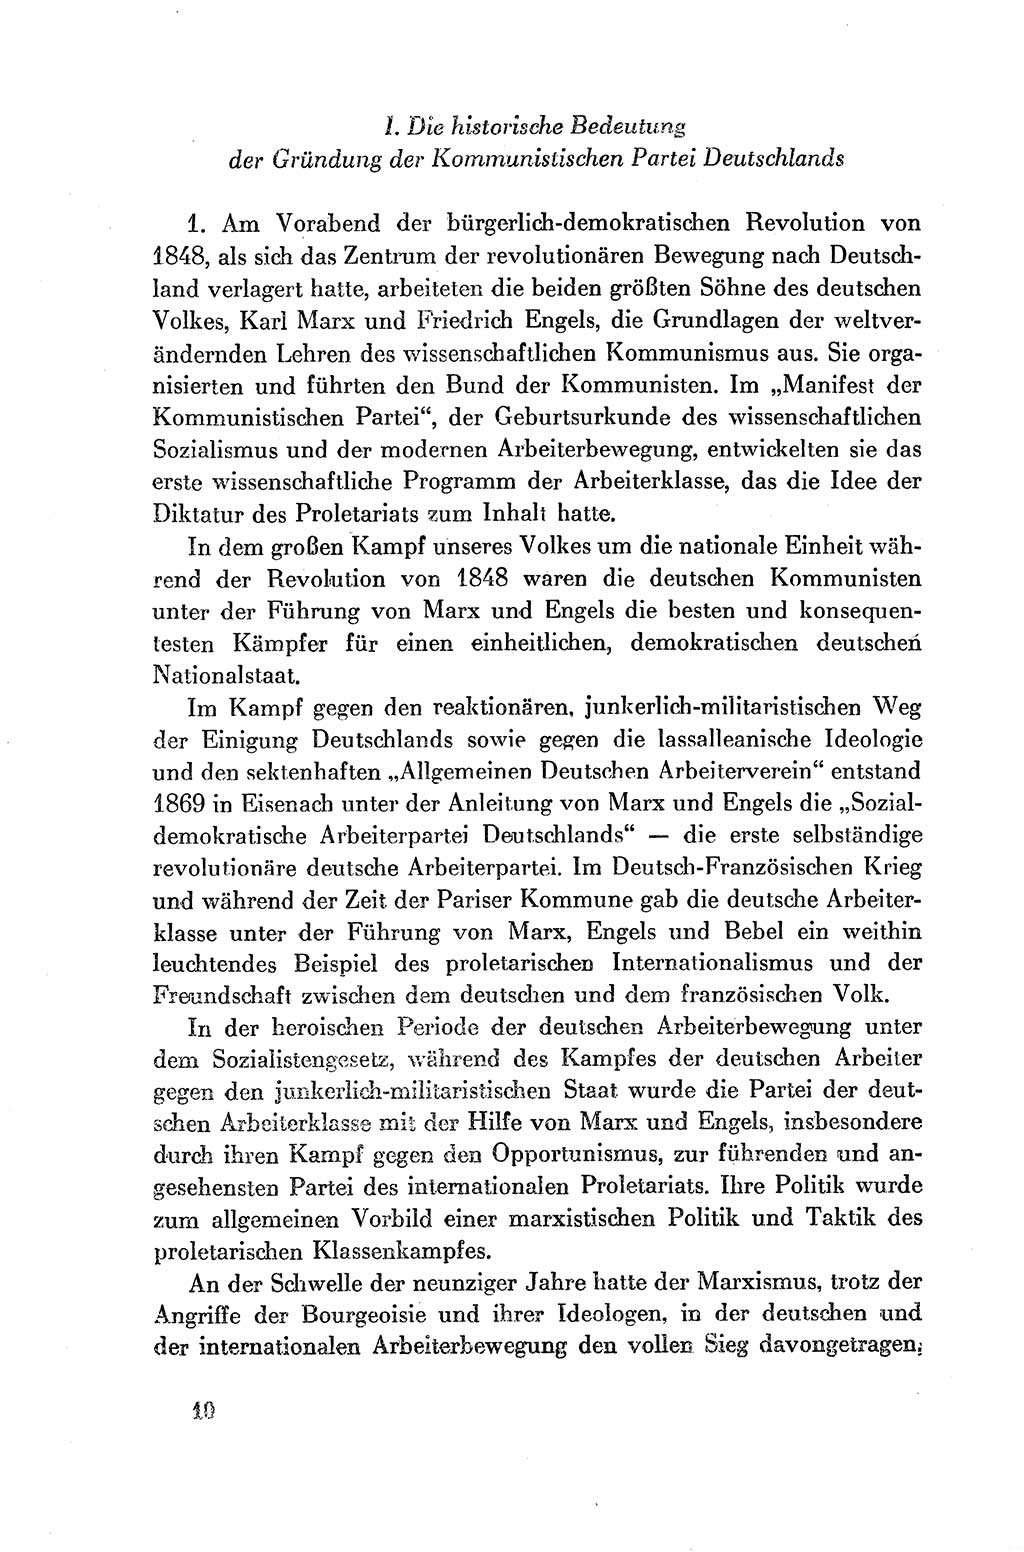 Dokumente der Sozialistischen Einheitspartei Deutschlands (SED) [Deutsche Demokratische Republik (DDR)] 1954-1955, Seite 10 (Dok. SED DDR 1954-1955, S. 10)